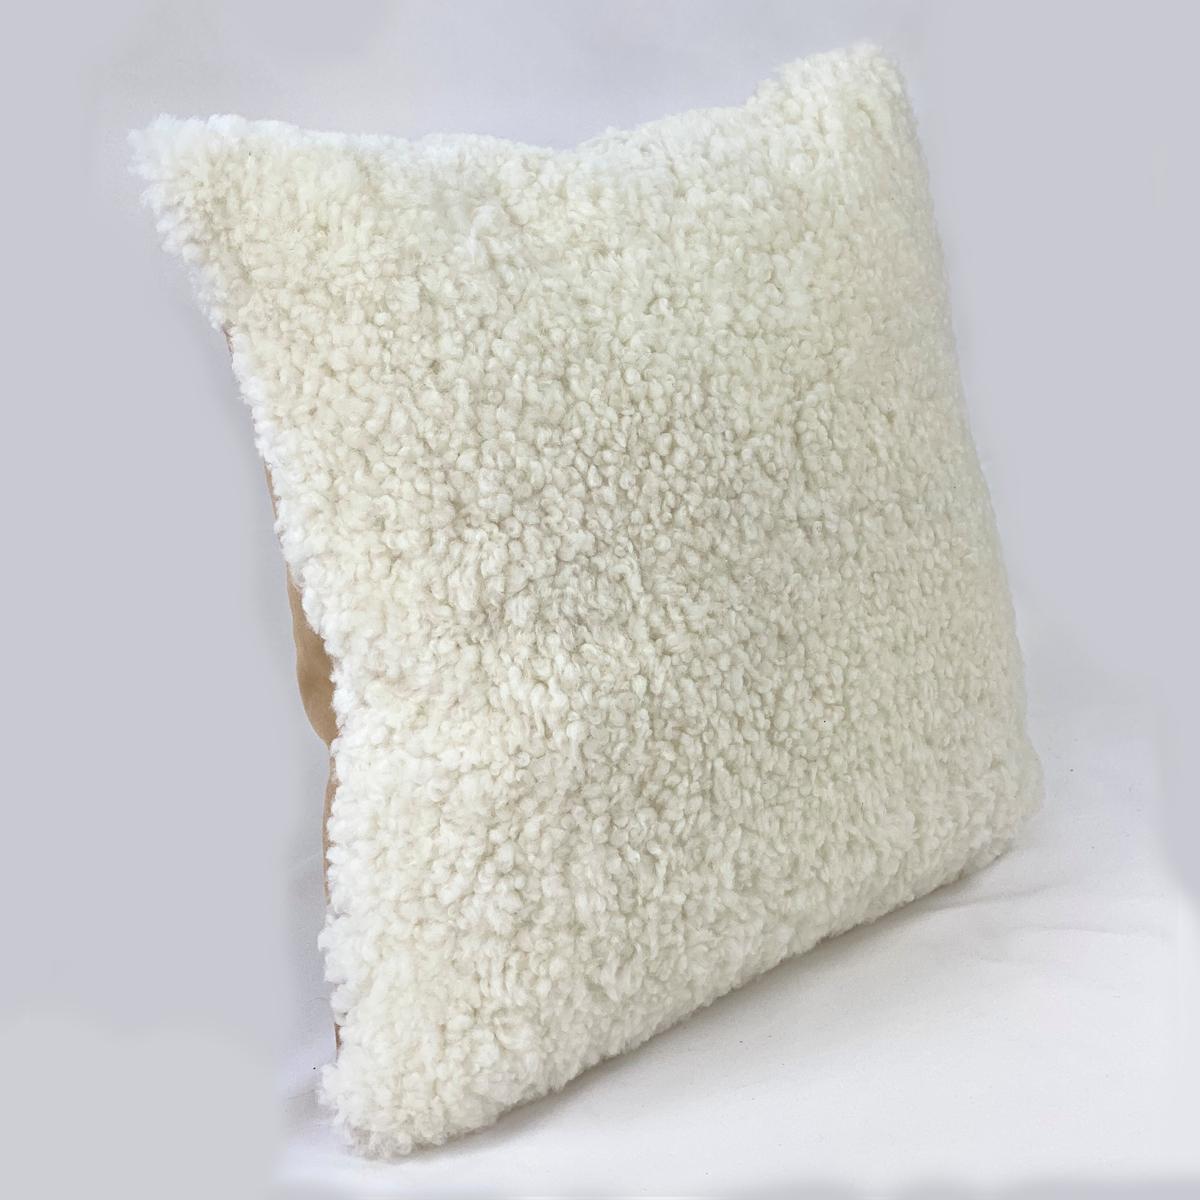 Bringen Sie mit diesem weißen Shearling-Kissen natürliche, gemütliche Texturen in Ihr Interieur. Die Schafwolle hat einen kurzen und lockigen Flor, der dem Raum eine einladende Textur verleiht. Als Teil der Boucle-Kollektion steht dieses Kissen für